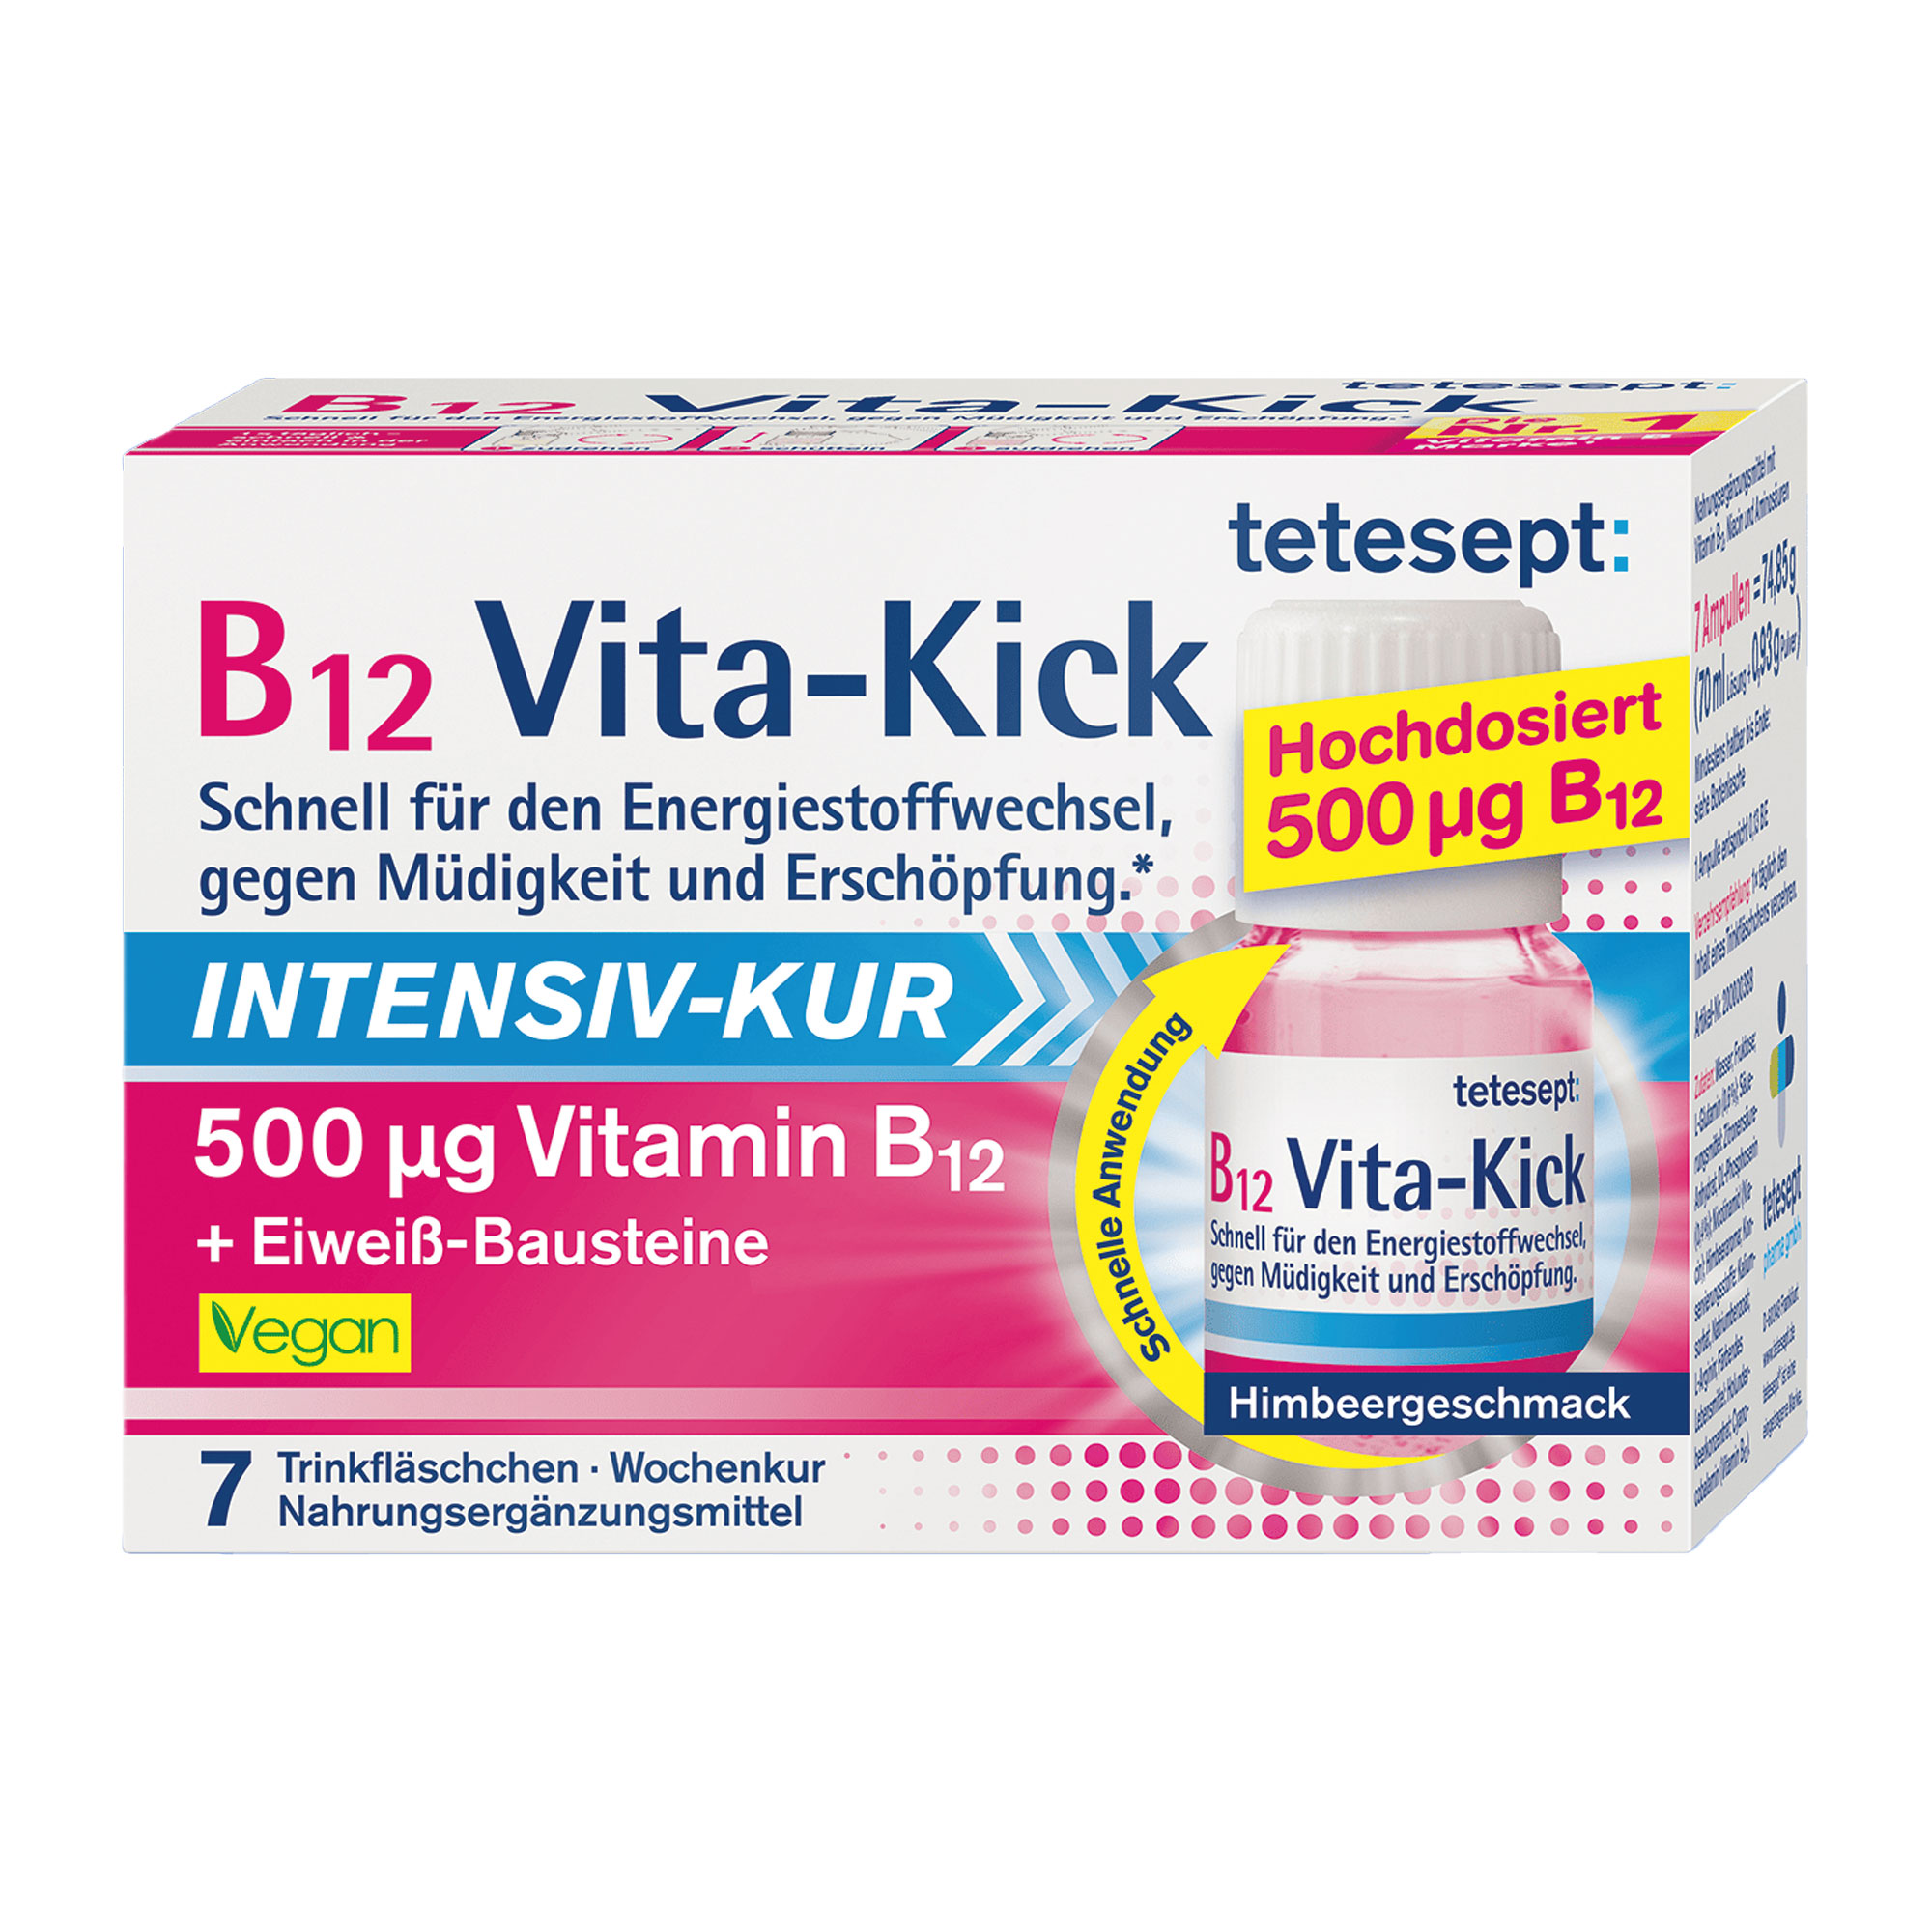 Nahrungsergänzungsmittel mit hochdosiertem Vitamin B12 (500 µg). Intensiv-Kur mit Himbeergeschmack.